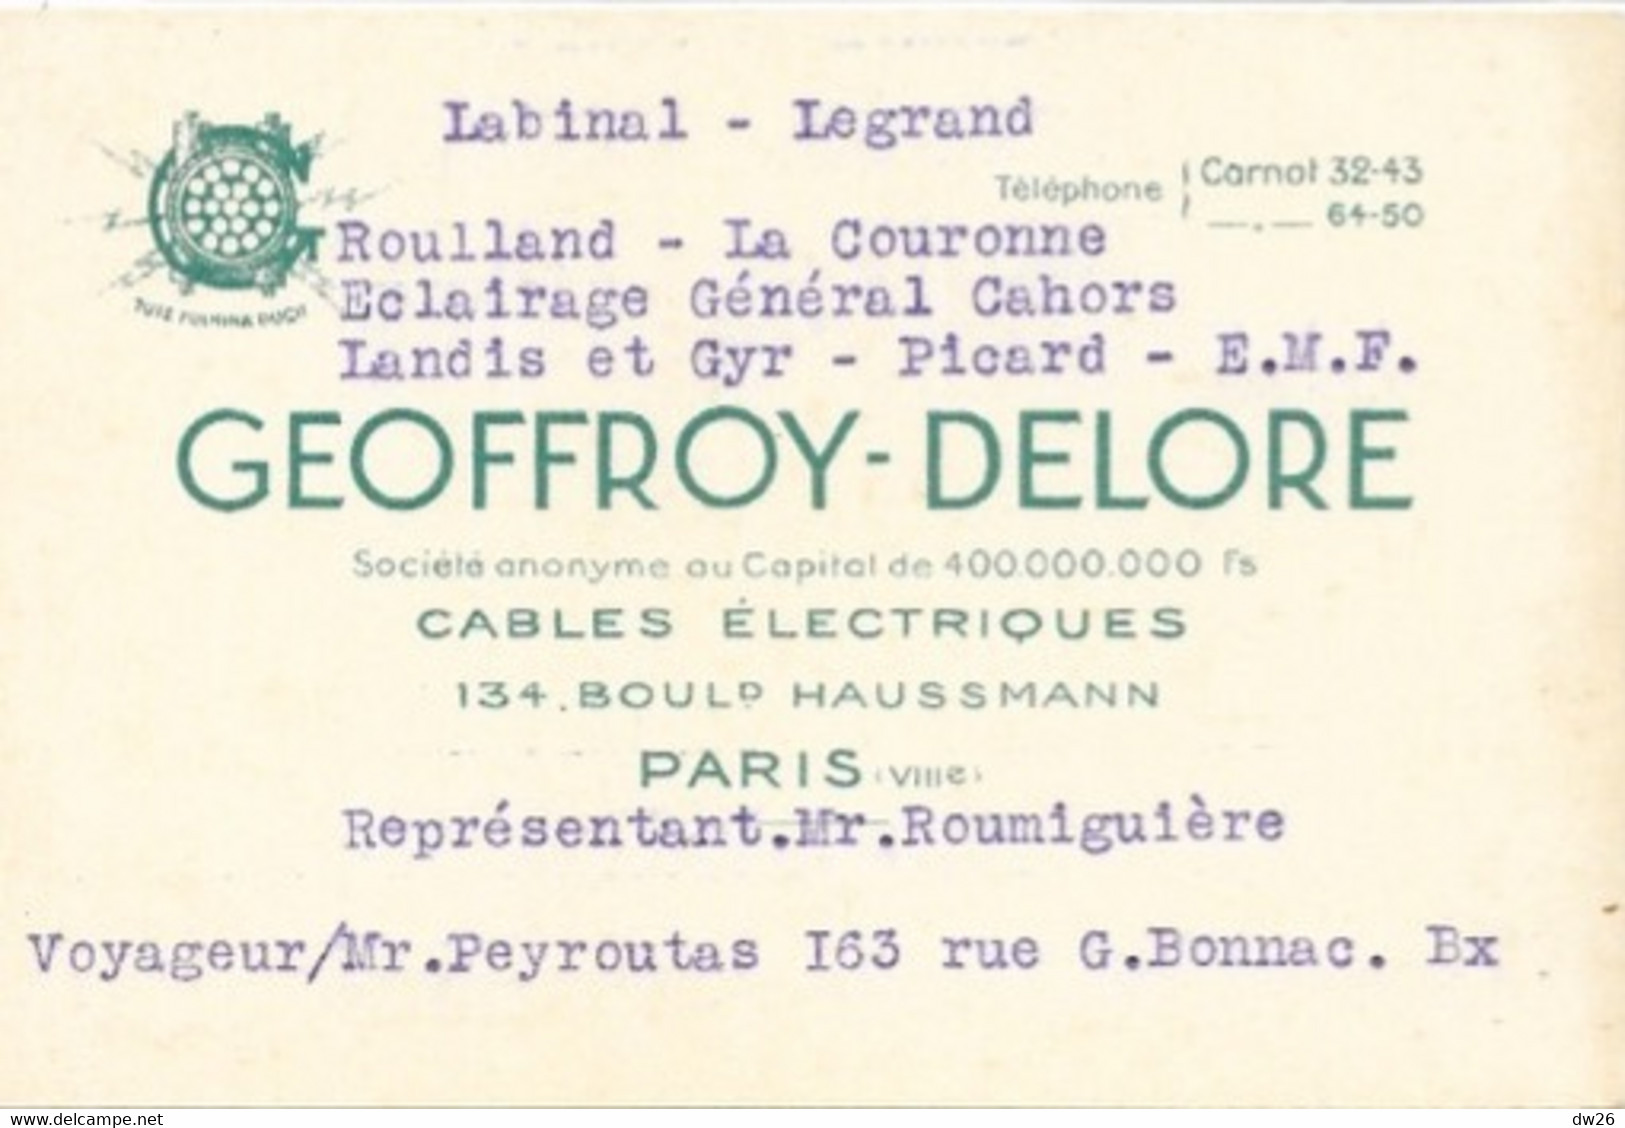 Carte De Représentant (M. Roumiguière) Cables Electriques Geoffroy-Delore, Boulevard Haussmann, Paris - Visitekaartjes